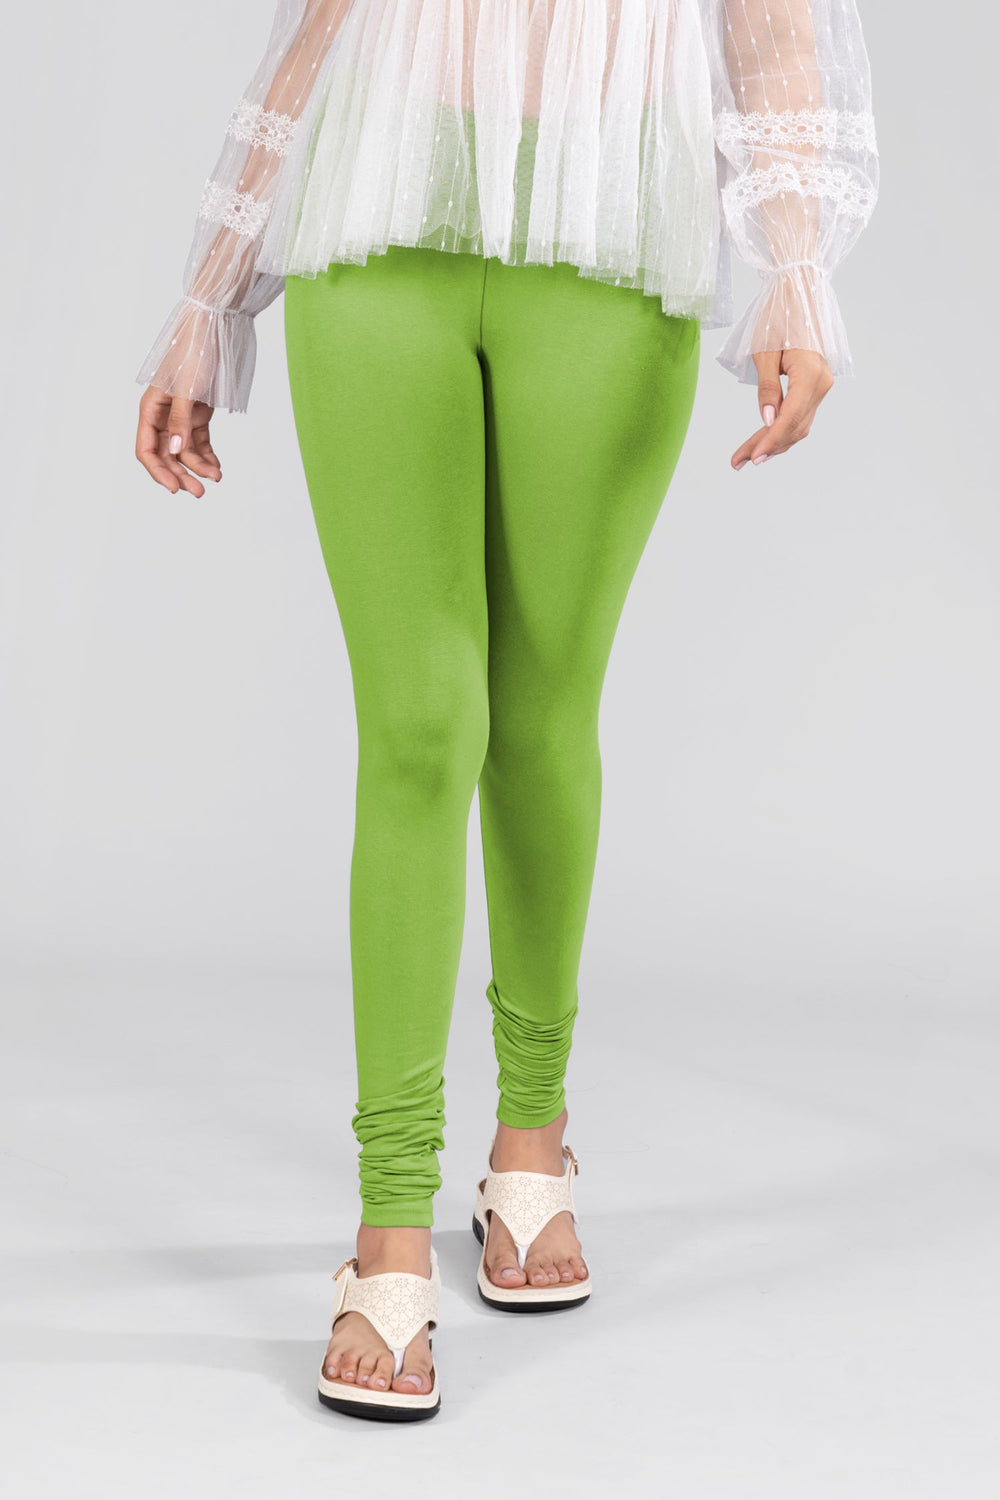 Fresh/Spring Parrot Green Cotton FullLength Leggings